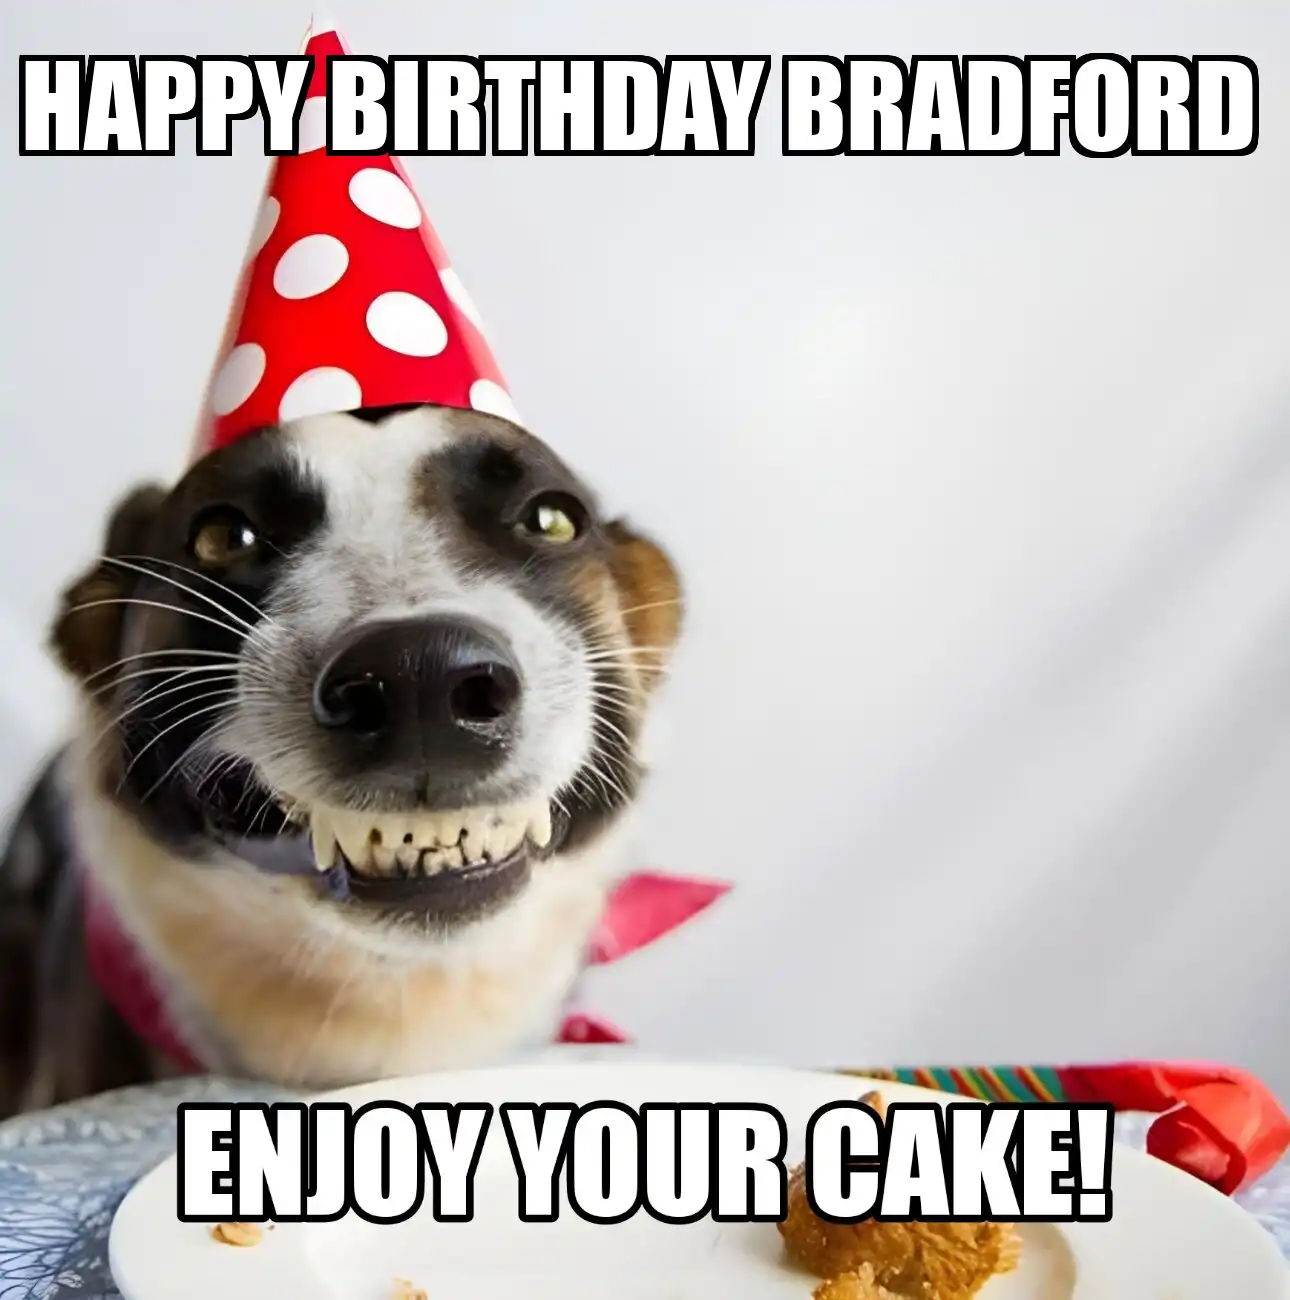 Happy Birthday Bradford Enjoy Your Cake Dog Meme